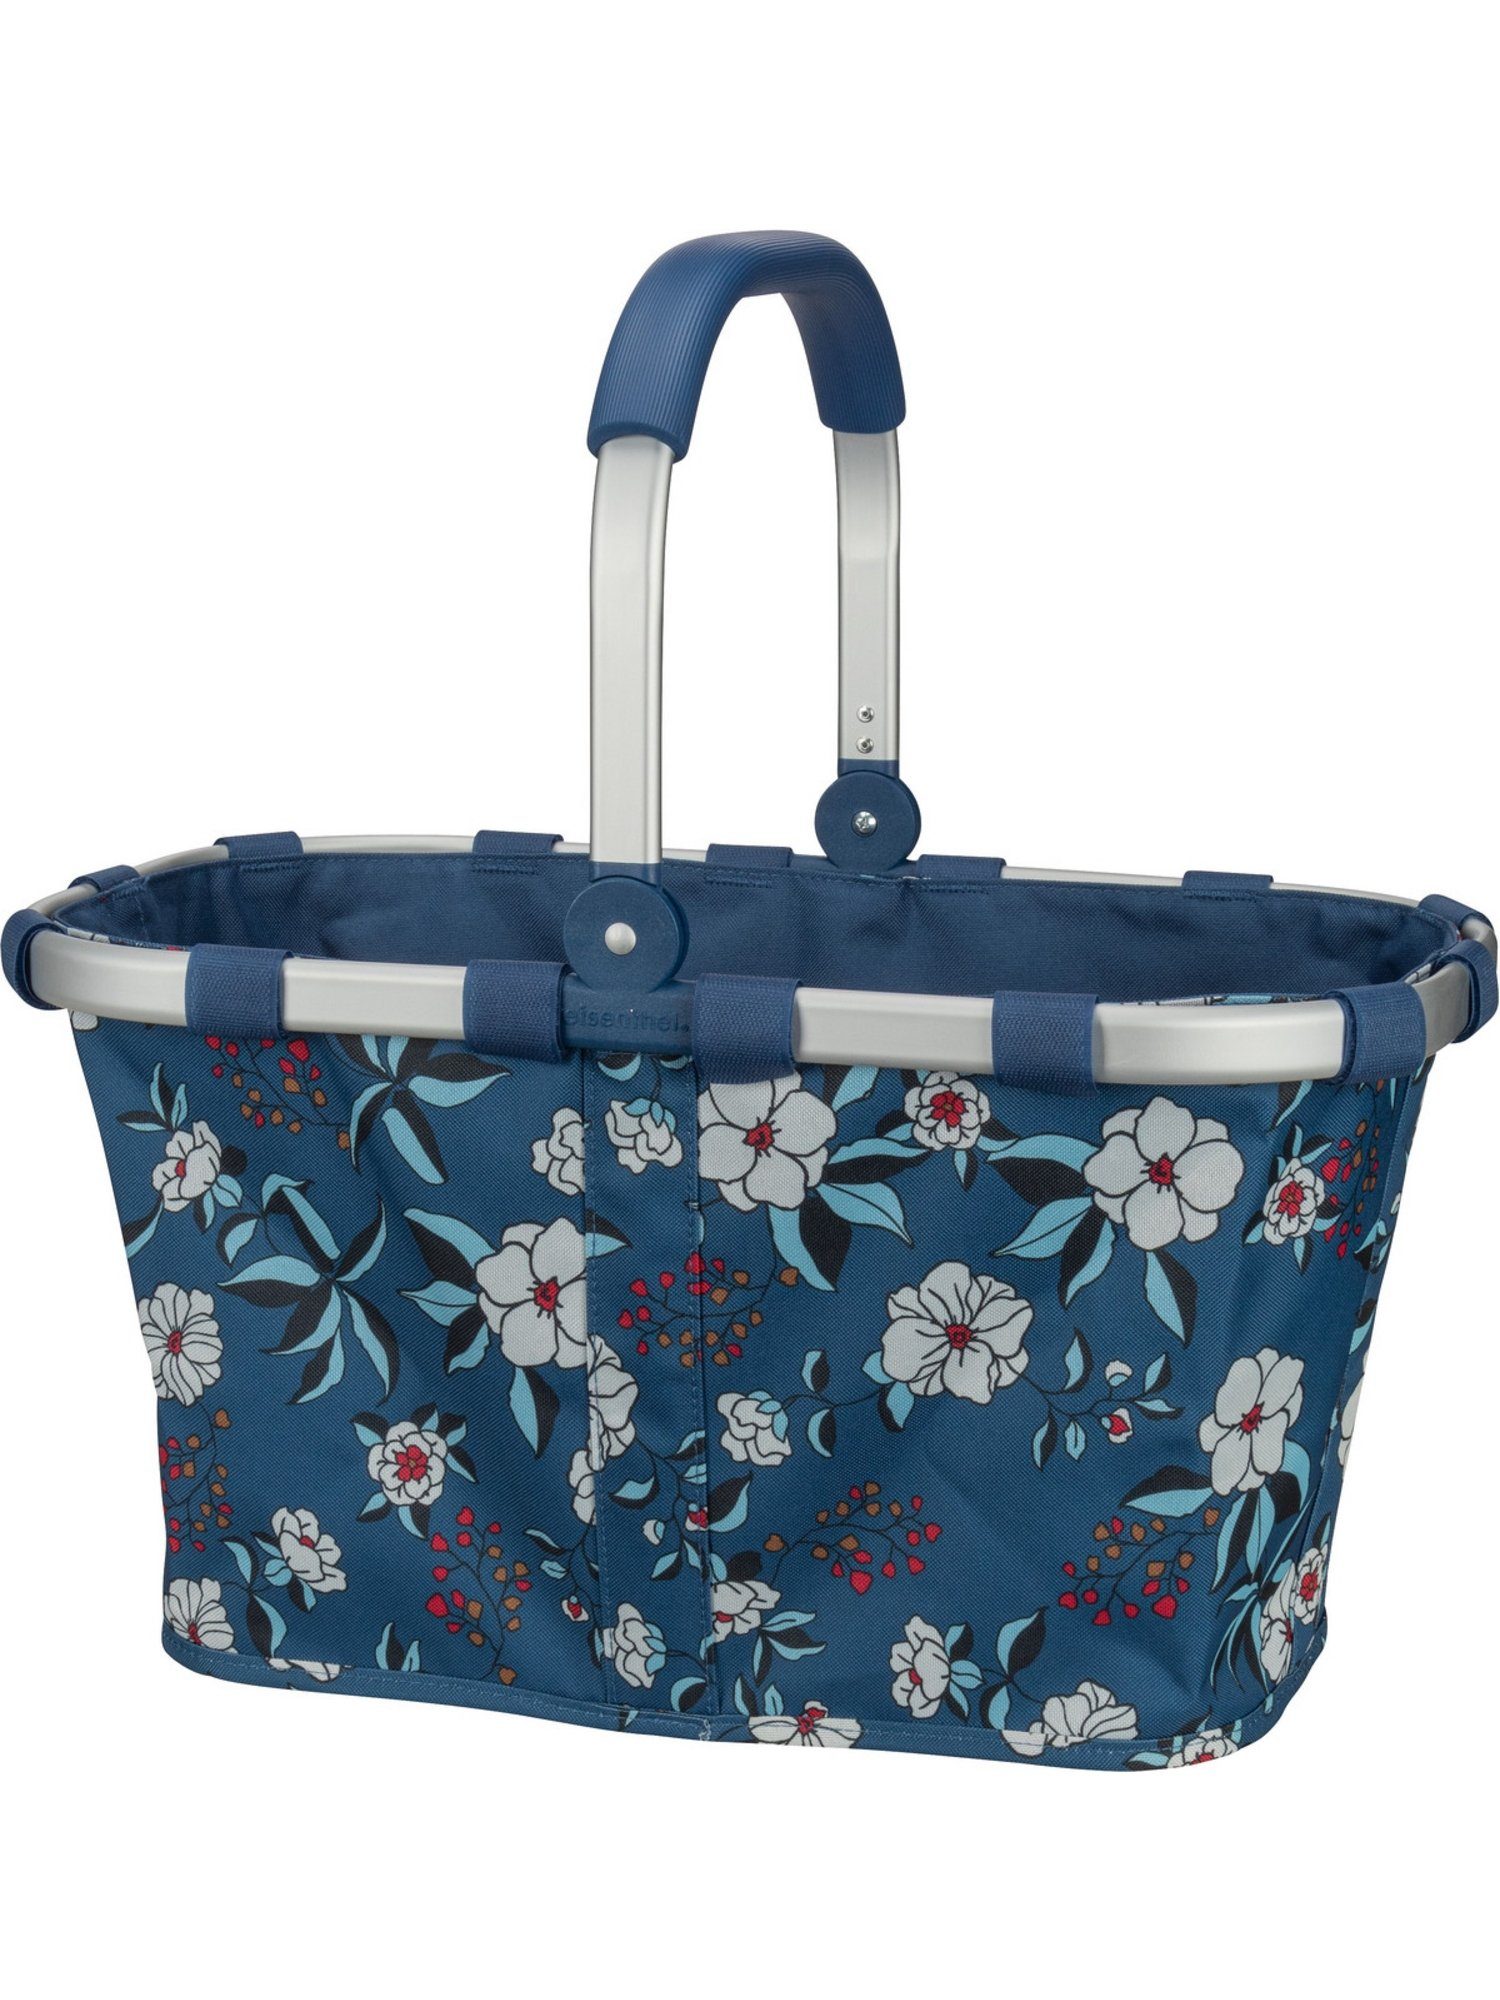 Einkaufsbeutel l carrybag, Blue REISENTHEL® 22 Garden